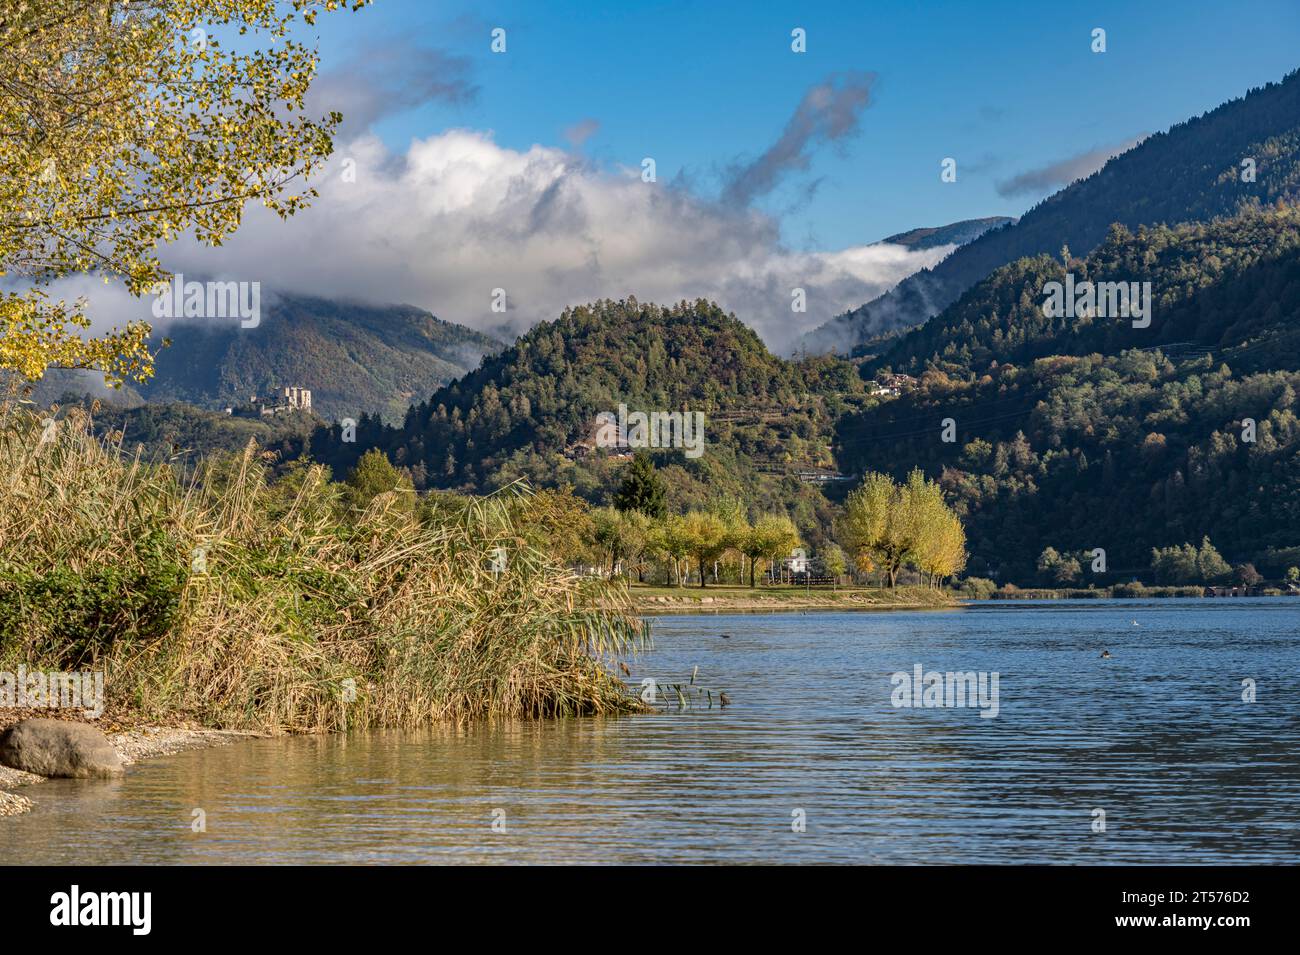 Der Caldonazzosee im Valsugana, Trentino, Italien, Europa |   Lago di Caldonazzo, Valsugana, Trentino, Italy, Europe Stock Photo